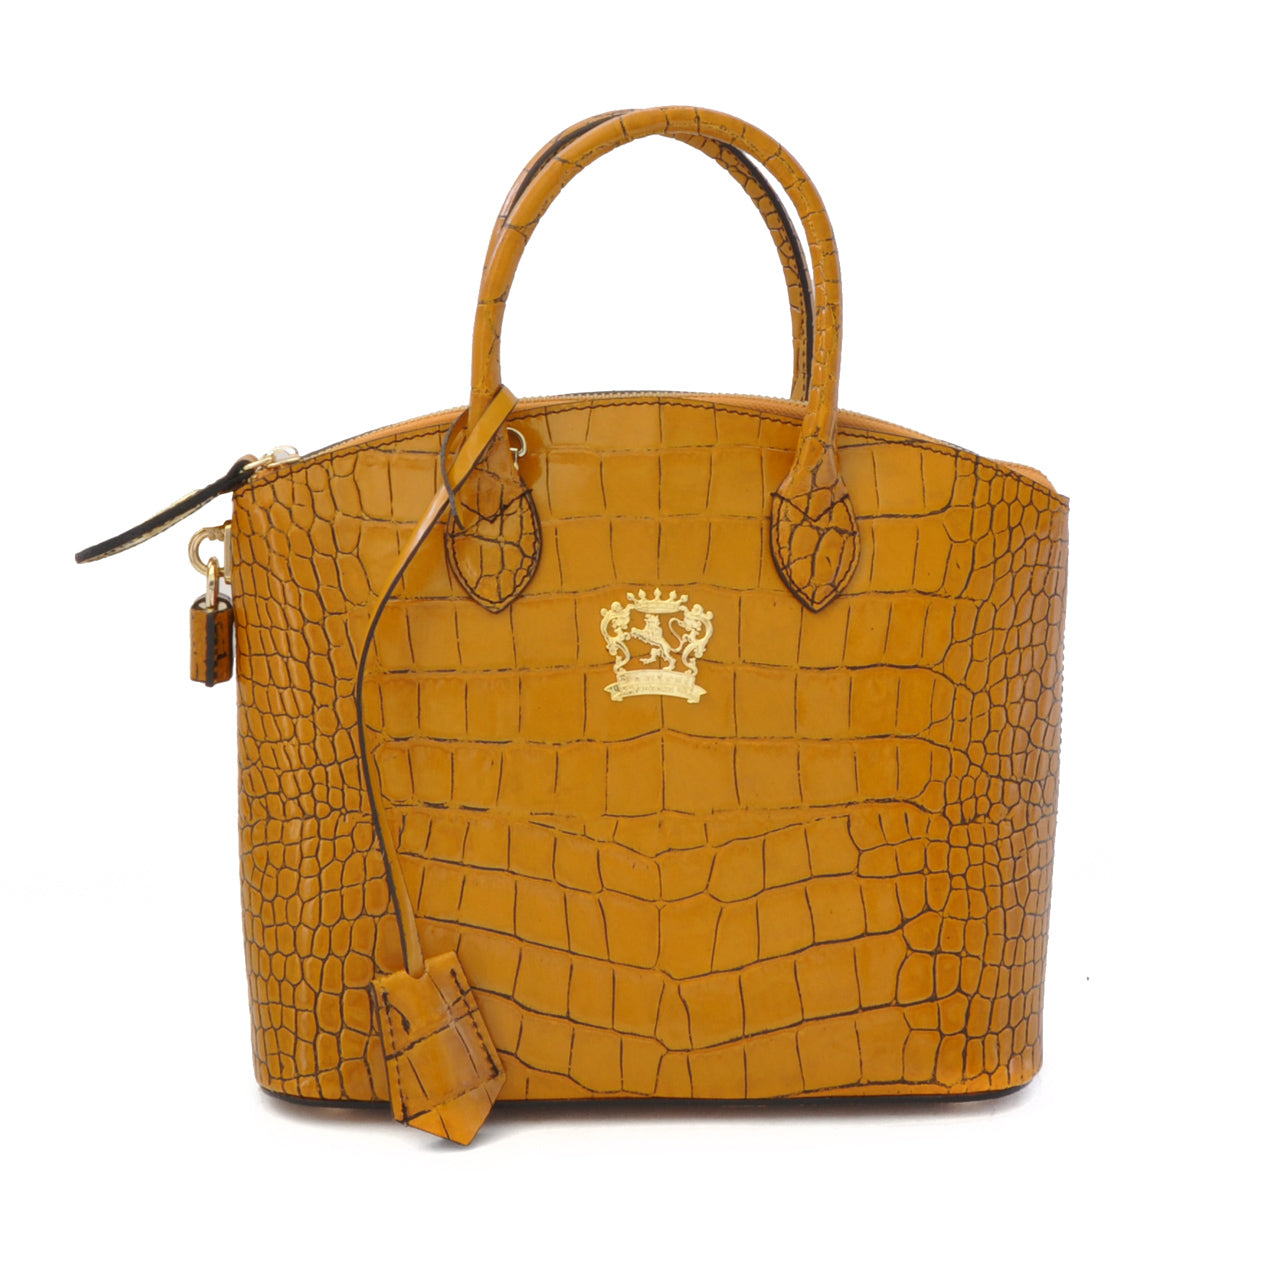 Pratesi Versilia King Small Woman Bag in genuine Italian leather